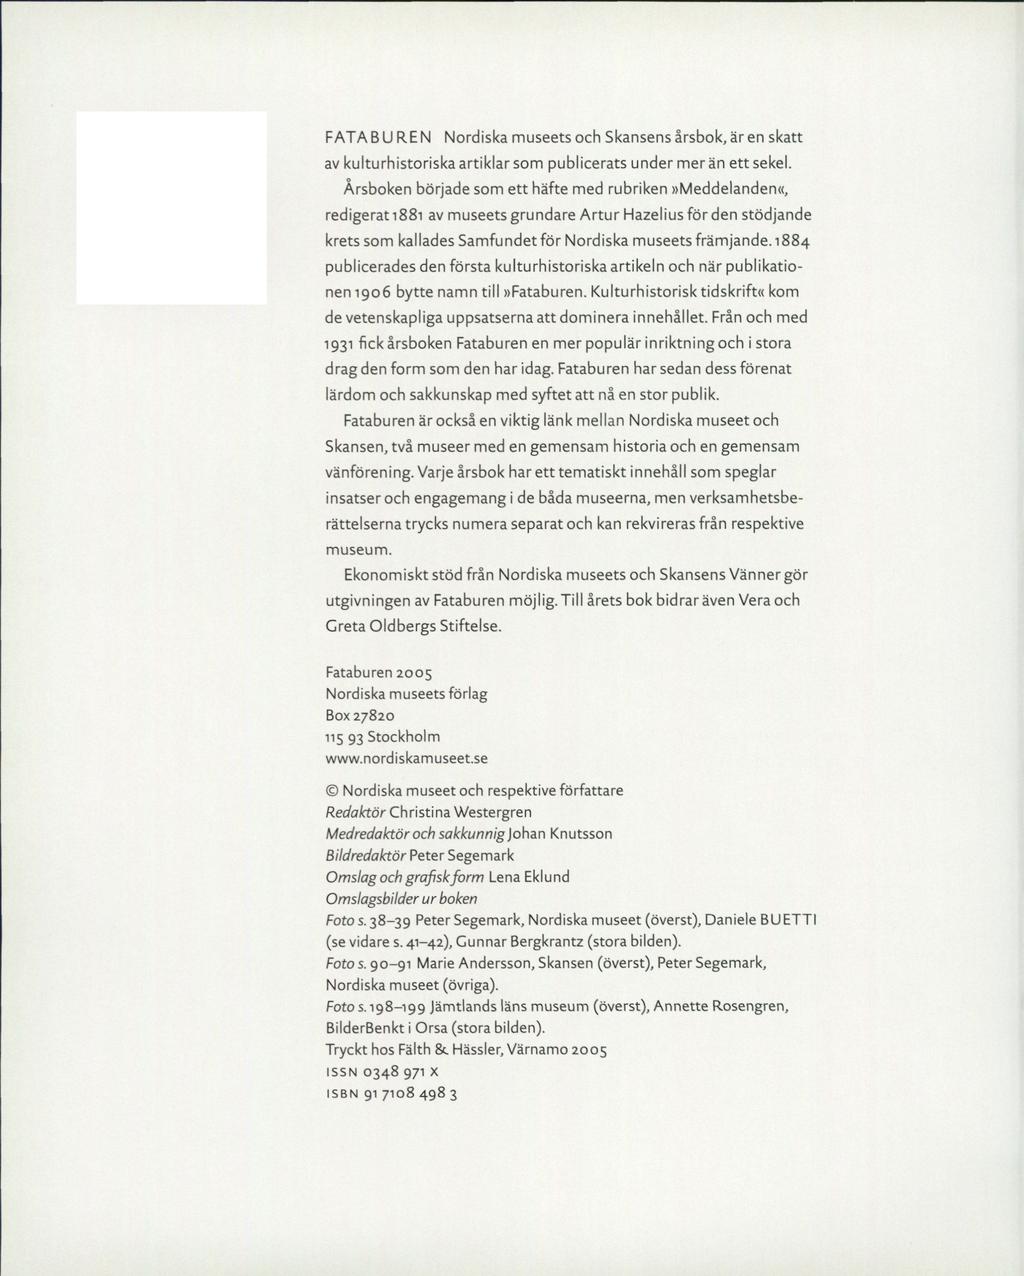 F ATA B U R E N Nordiska museets och Skansens årsbok, är en skatt av kulturhistoriska artiklar som publicerats under mer än ett sekel.